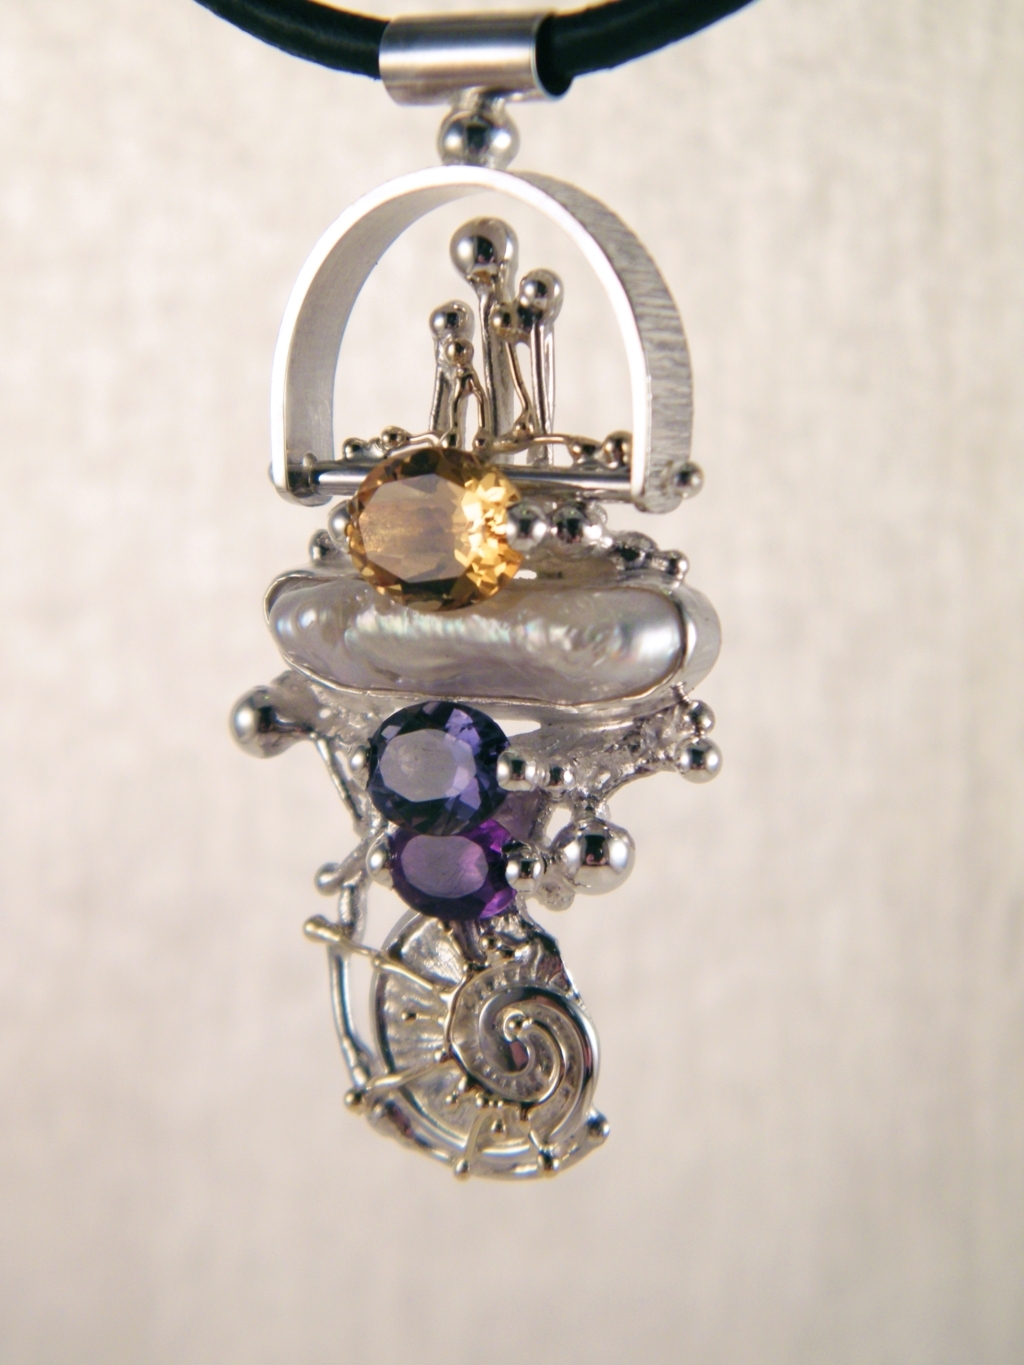 gregory pyra piro håndlavet vedhæng 2650, håndlavet vedhæng lavet af guld og sølv, blandet metal smykker, håndlavet vedhæng med ametyst og perle, håndlavet vedhæng med ametyst og citrin, håndlavet vedhæng med iolit og perle, smykker solgt i kunst- og håndværksgallerier, smykker vist på internationale messer